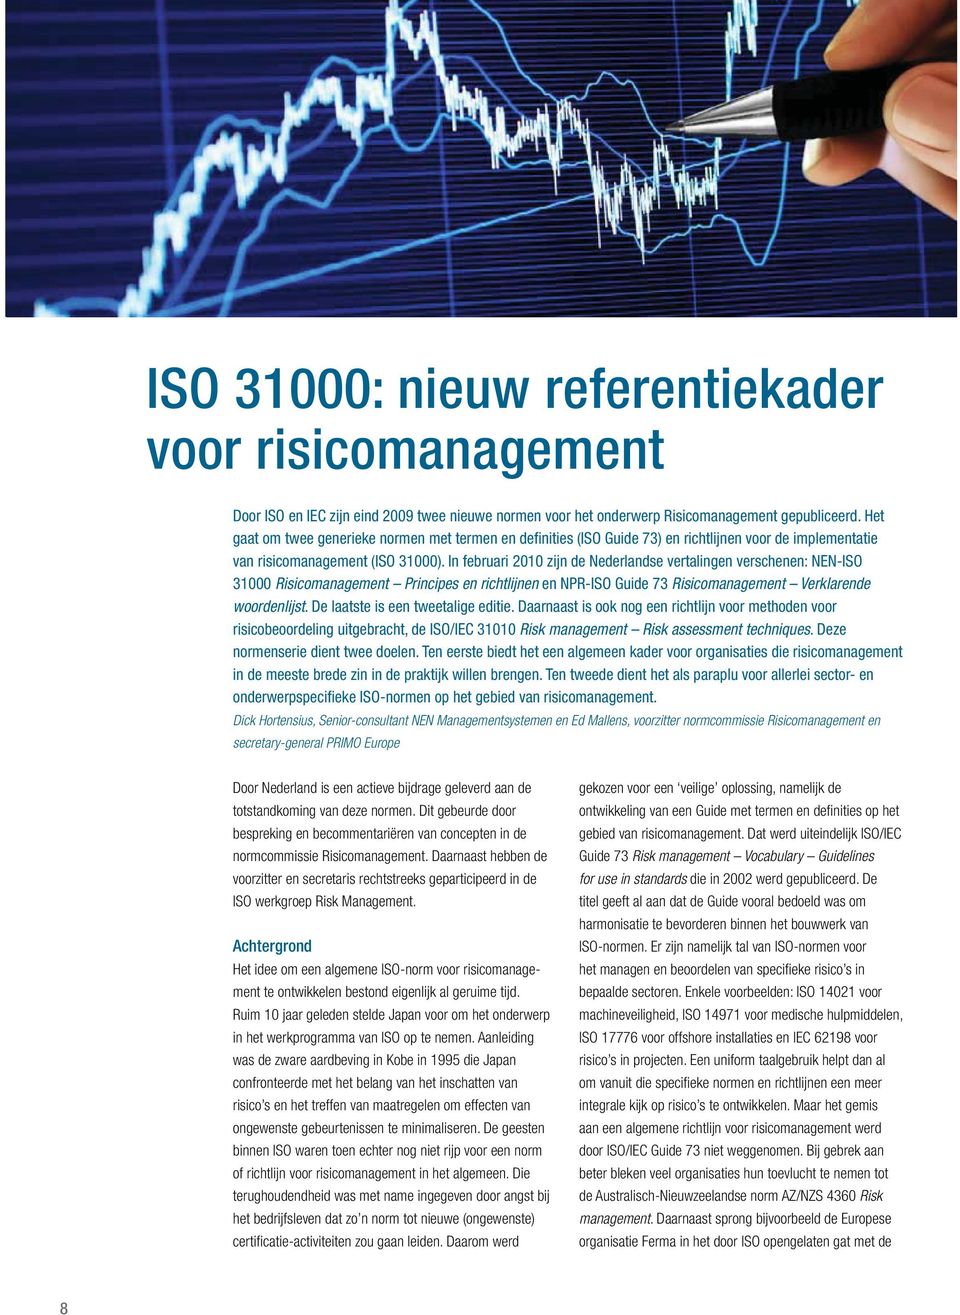 In februari 2010 zijn de Nederlandse vertalingen verschenen: NEN-ISO 31000 Risicomanagement Principes en richtlijnen en NPR-ISO Guide 73 Risicomanagement Verklarende woordenlijst.